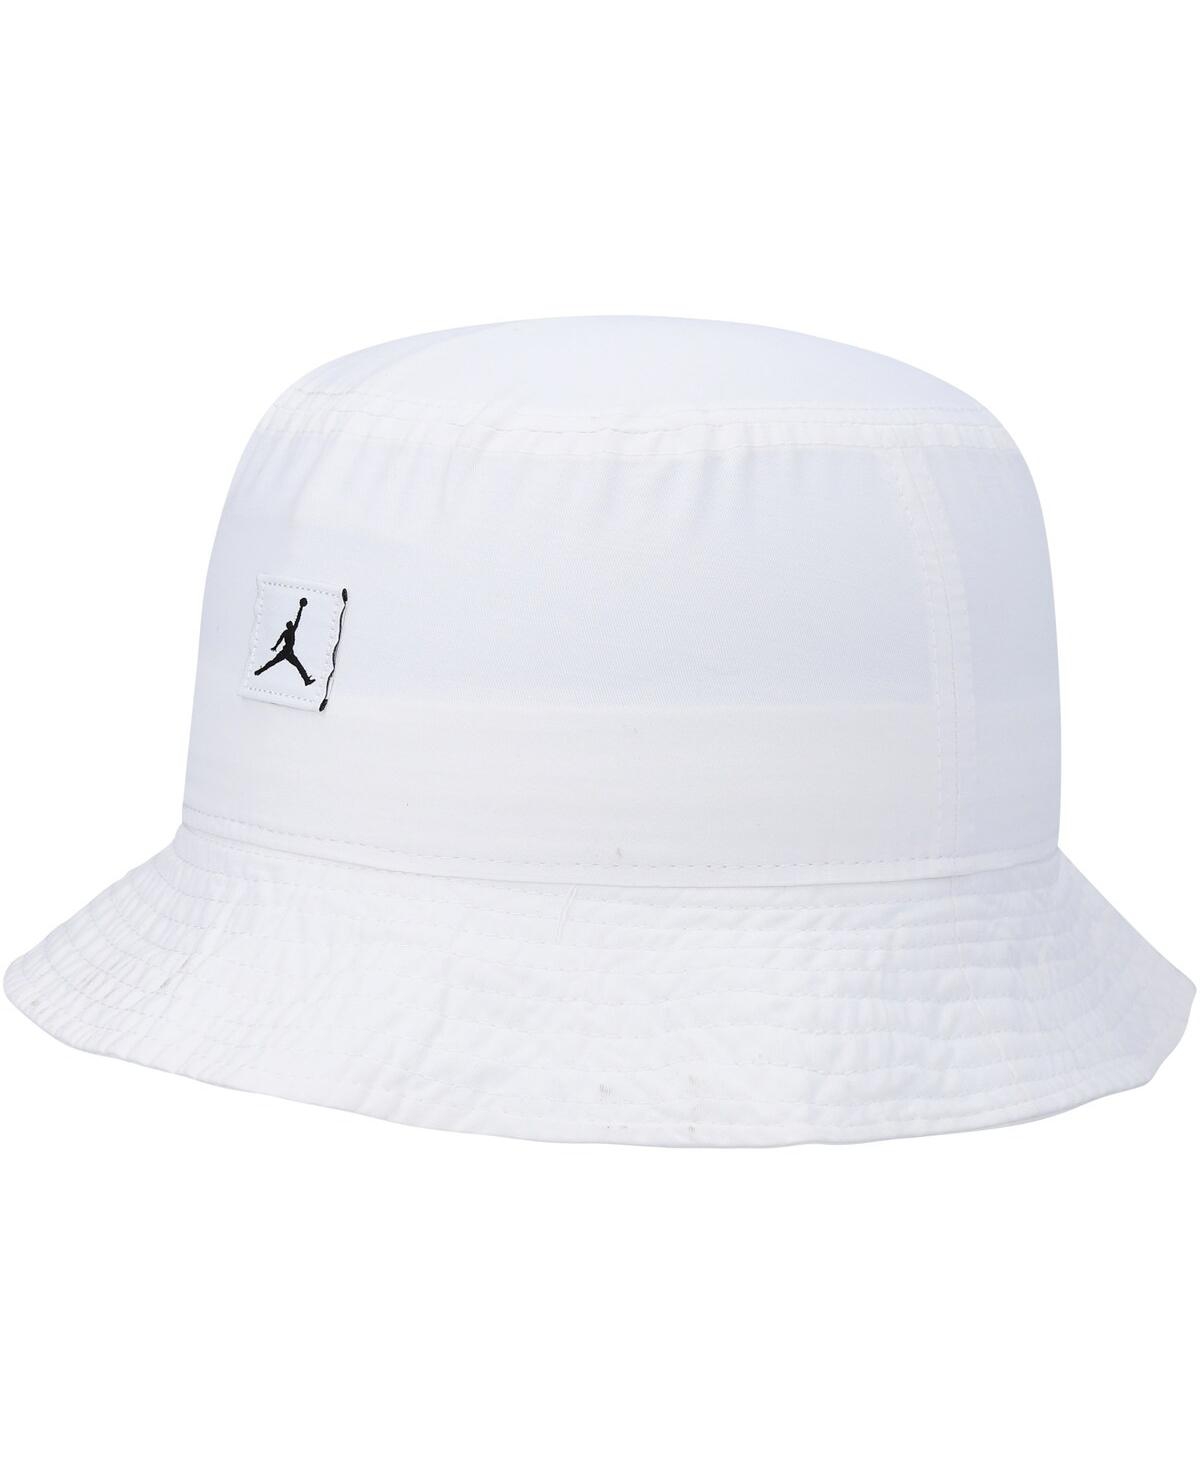 Men's Jordan White Jumpman Washed Bucket Hat - White